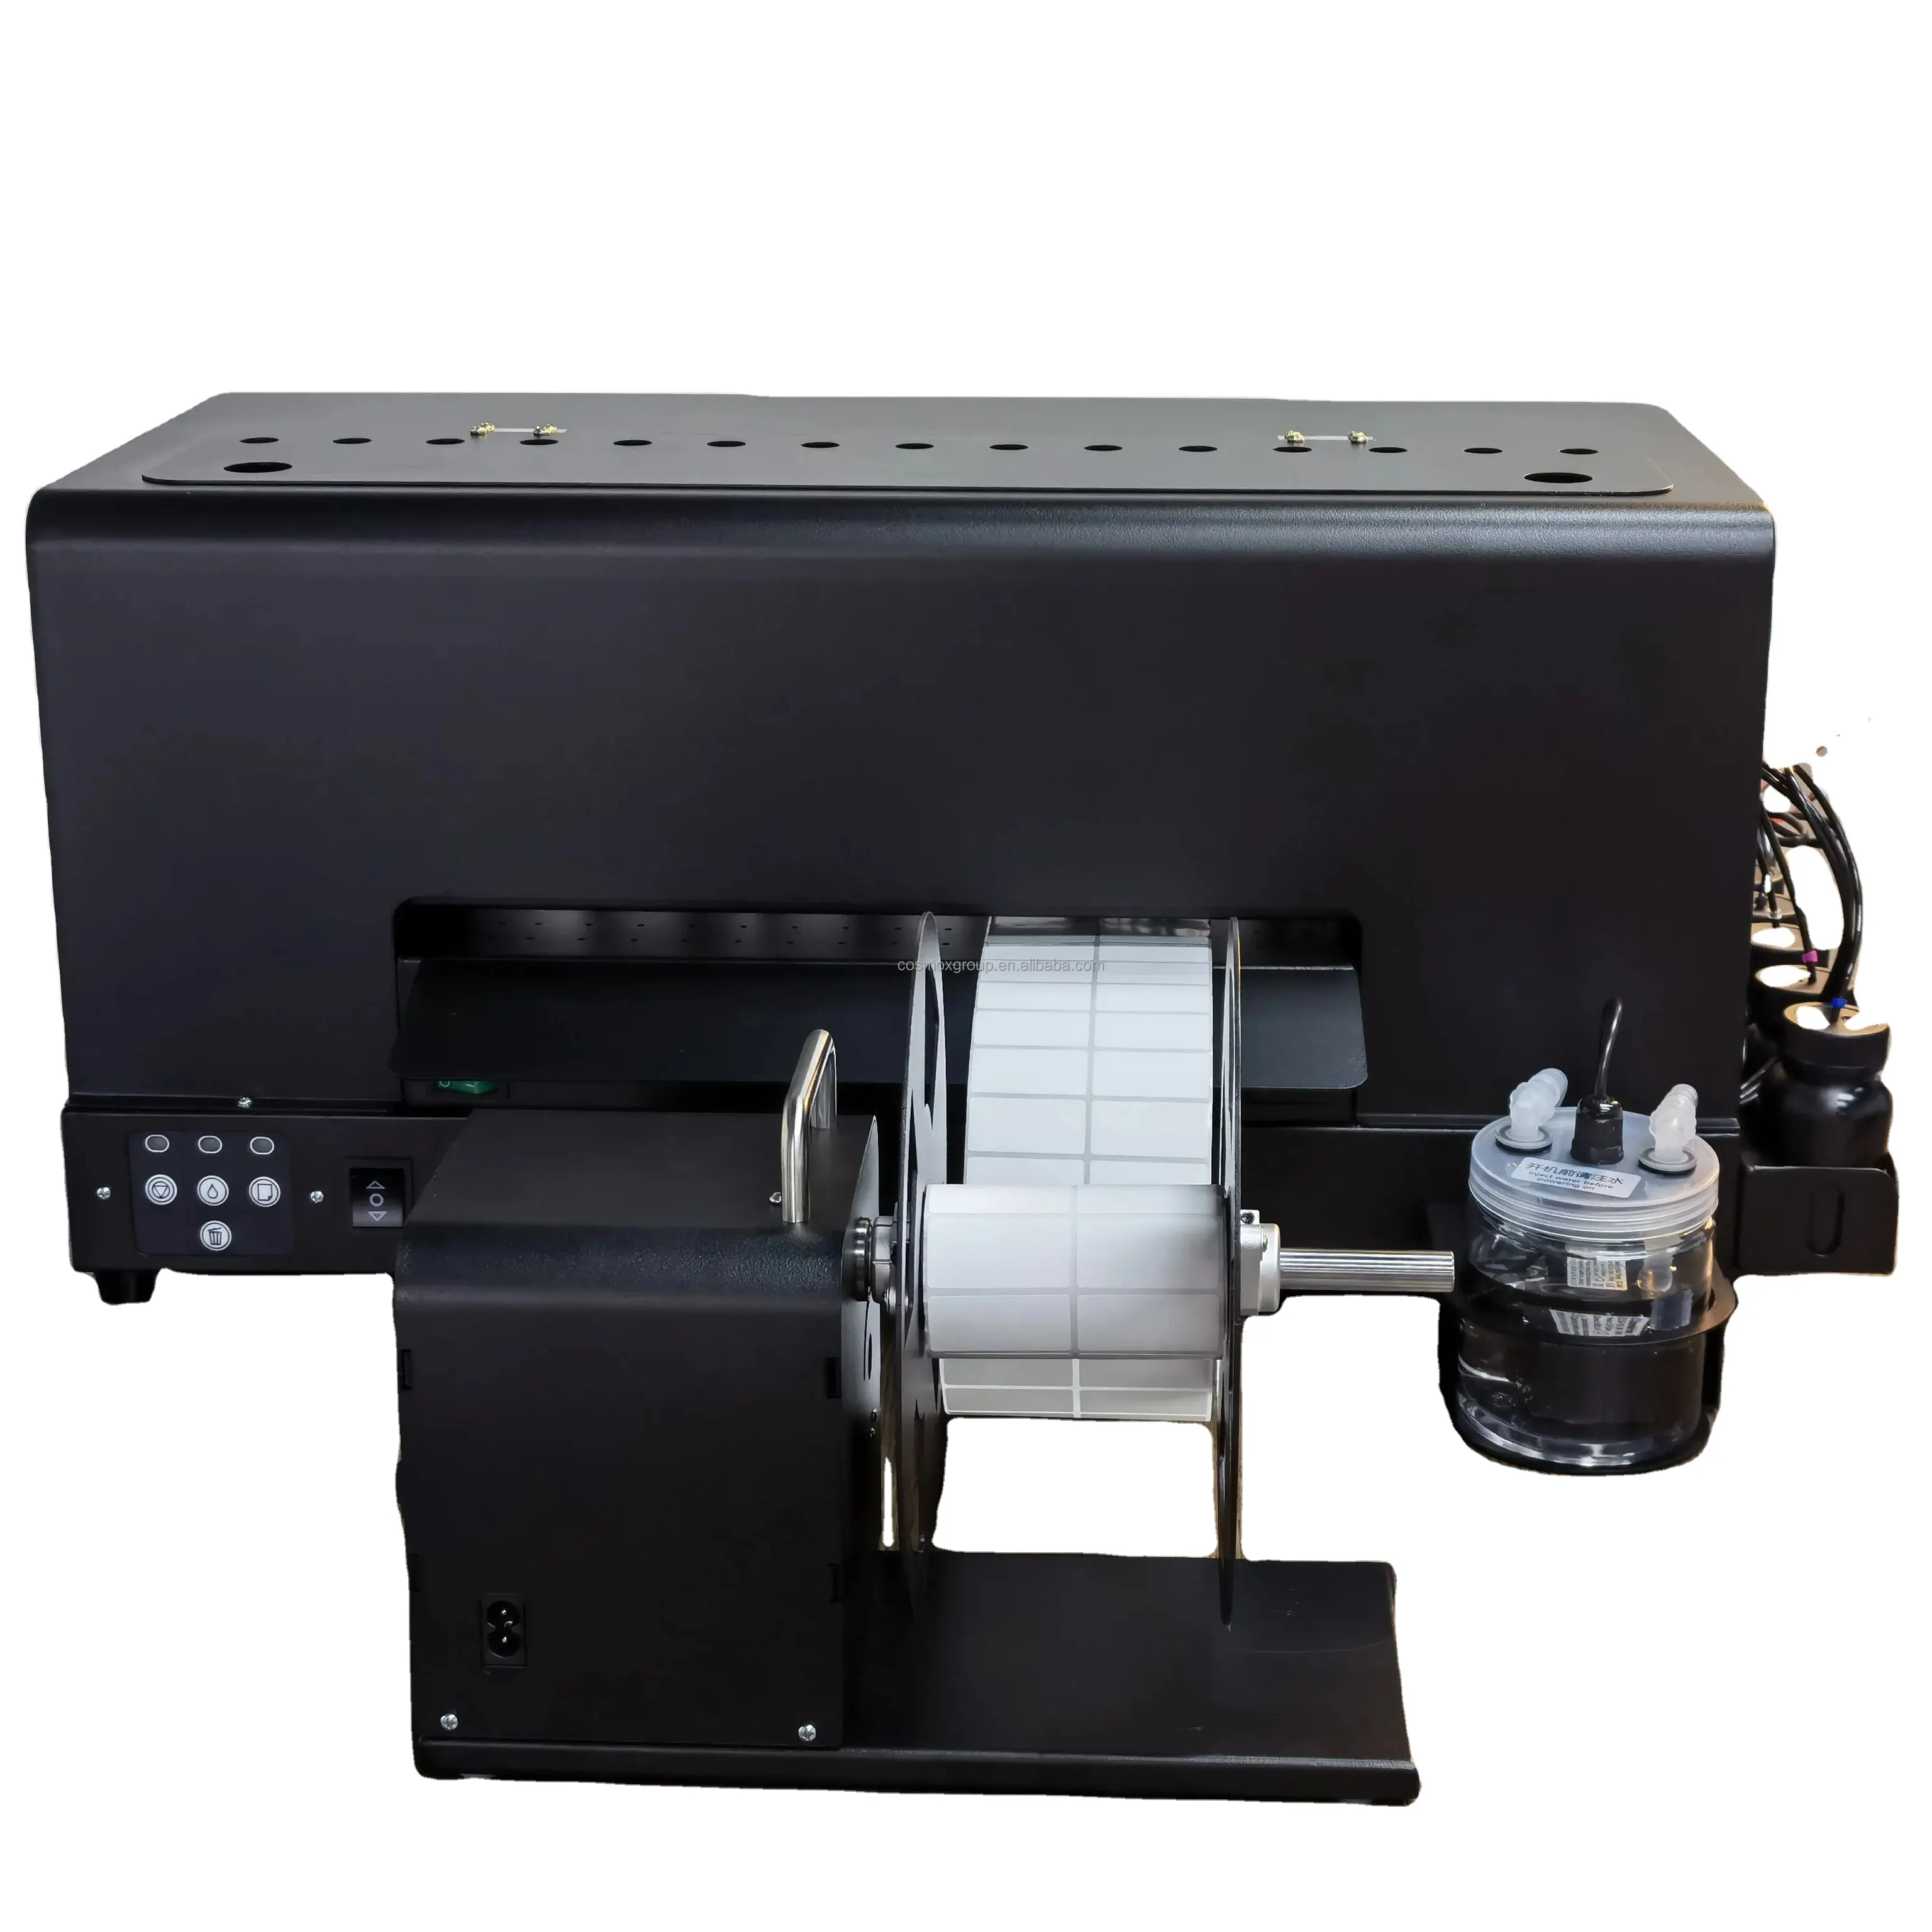 Machine d'impression photo pour petite entreprise imprimante d'étiquettes d'expédition thermique machine imprimante d'étiquettes